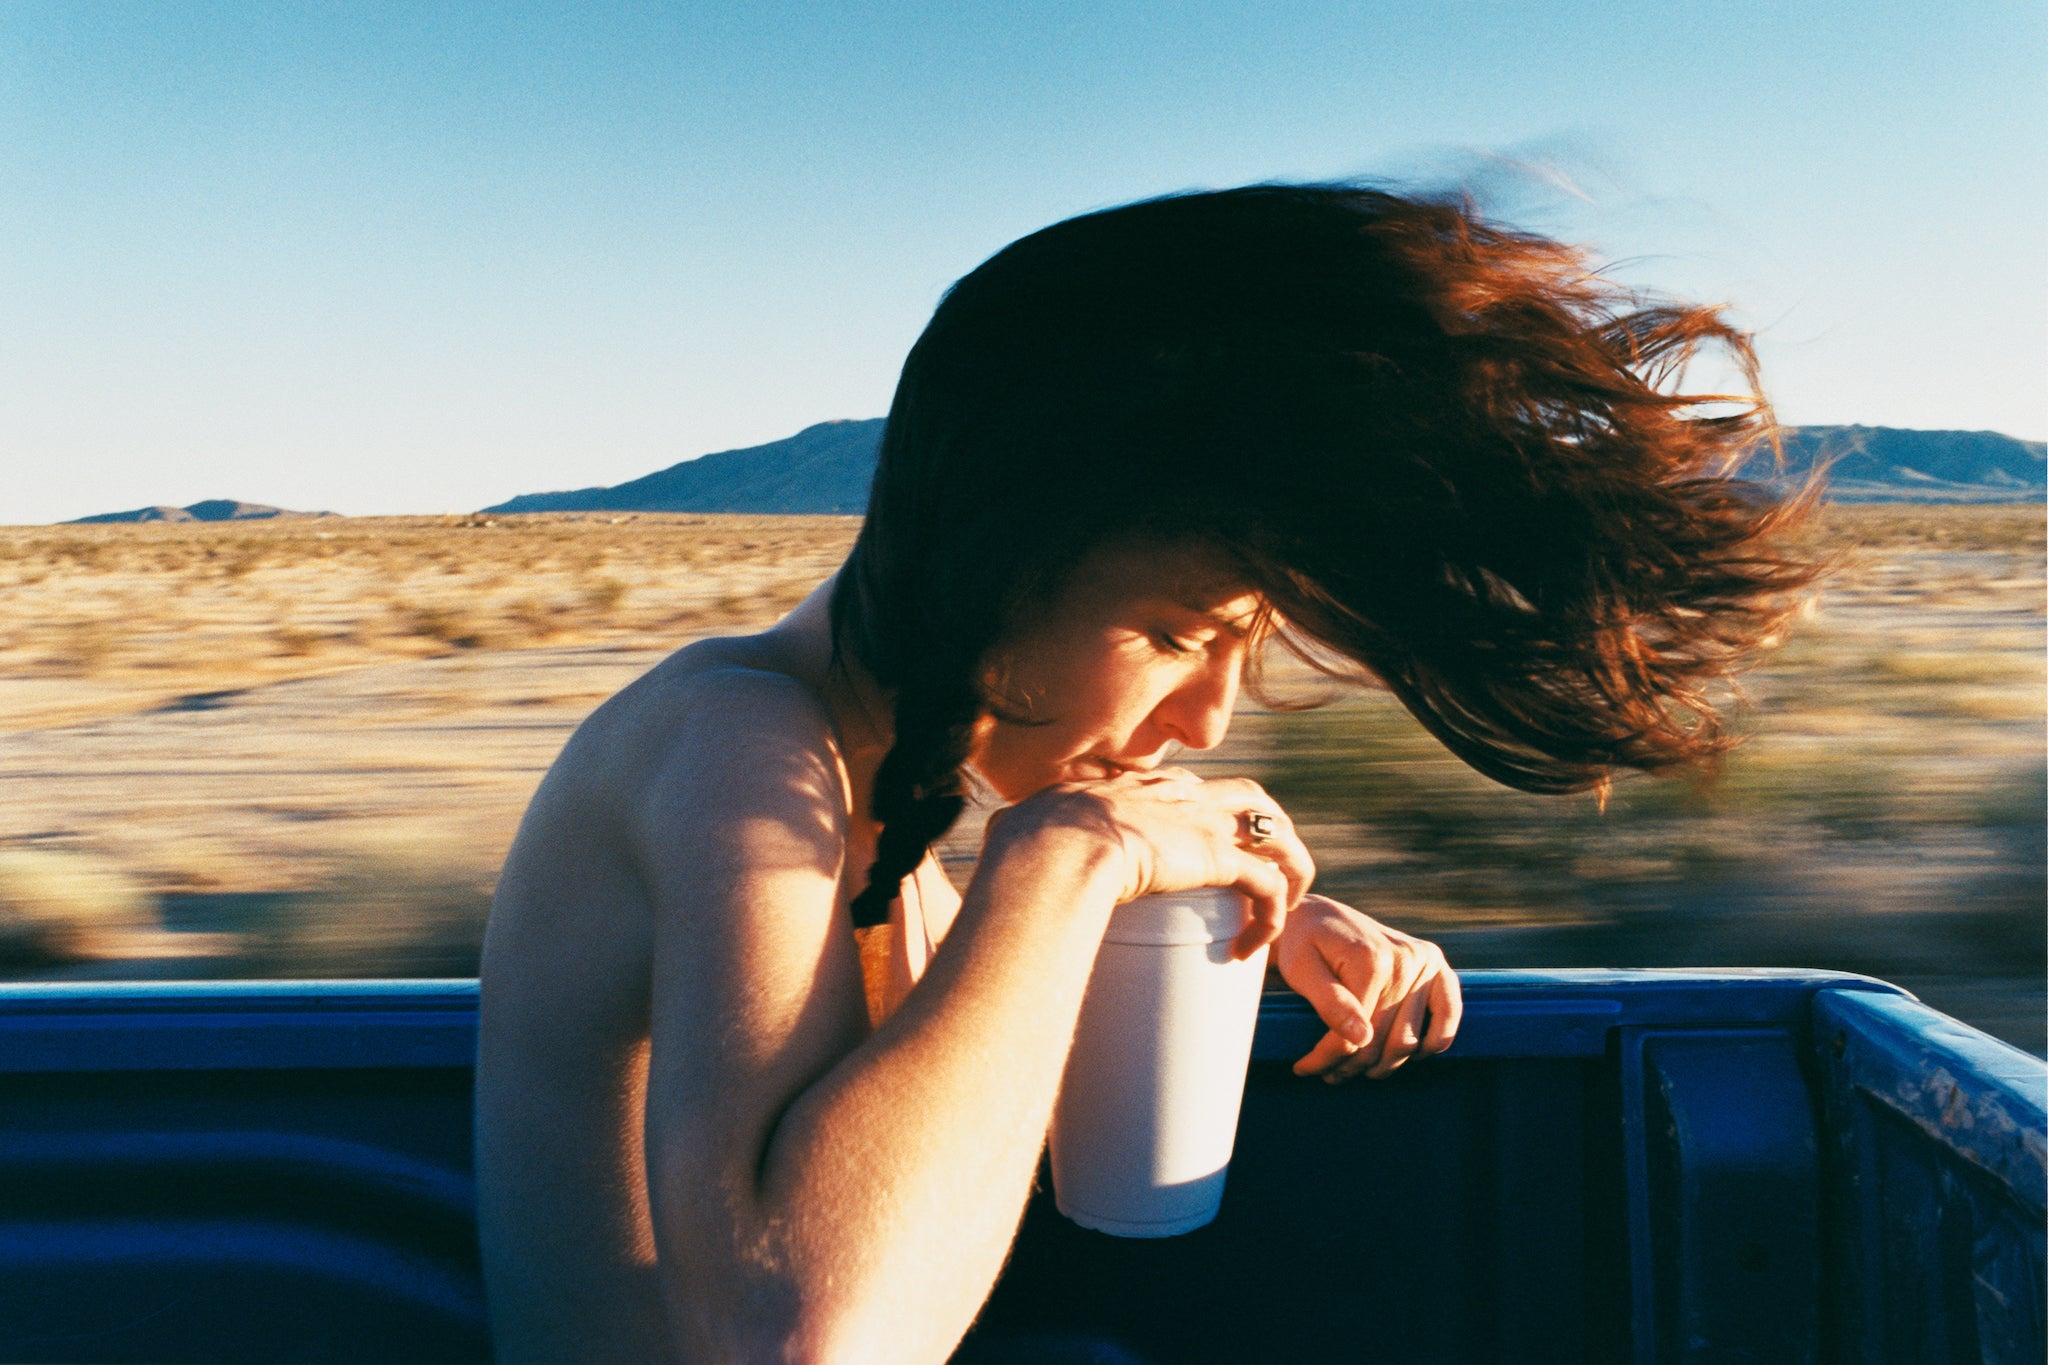 Ryan McGinley, ‘Dakota Hair’, 2004